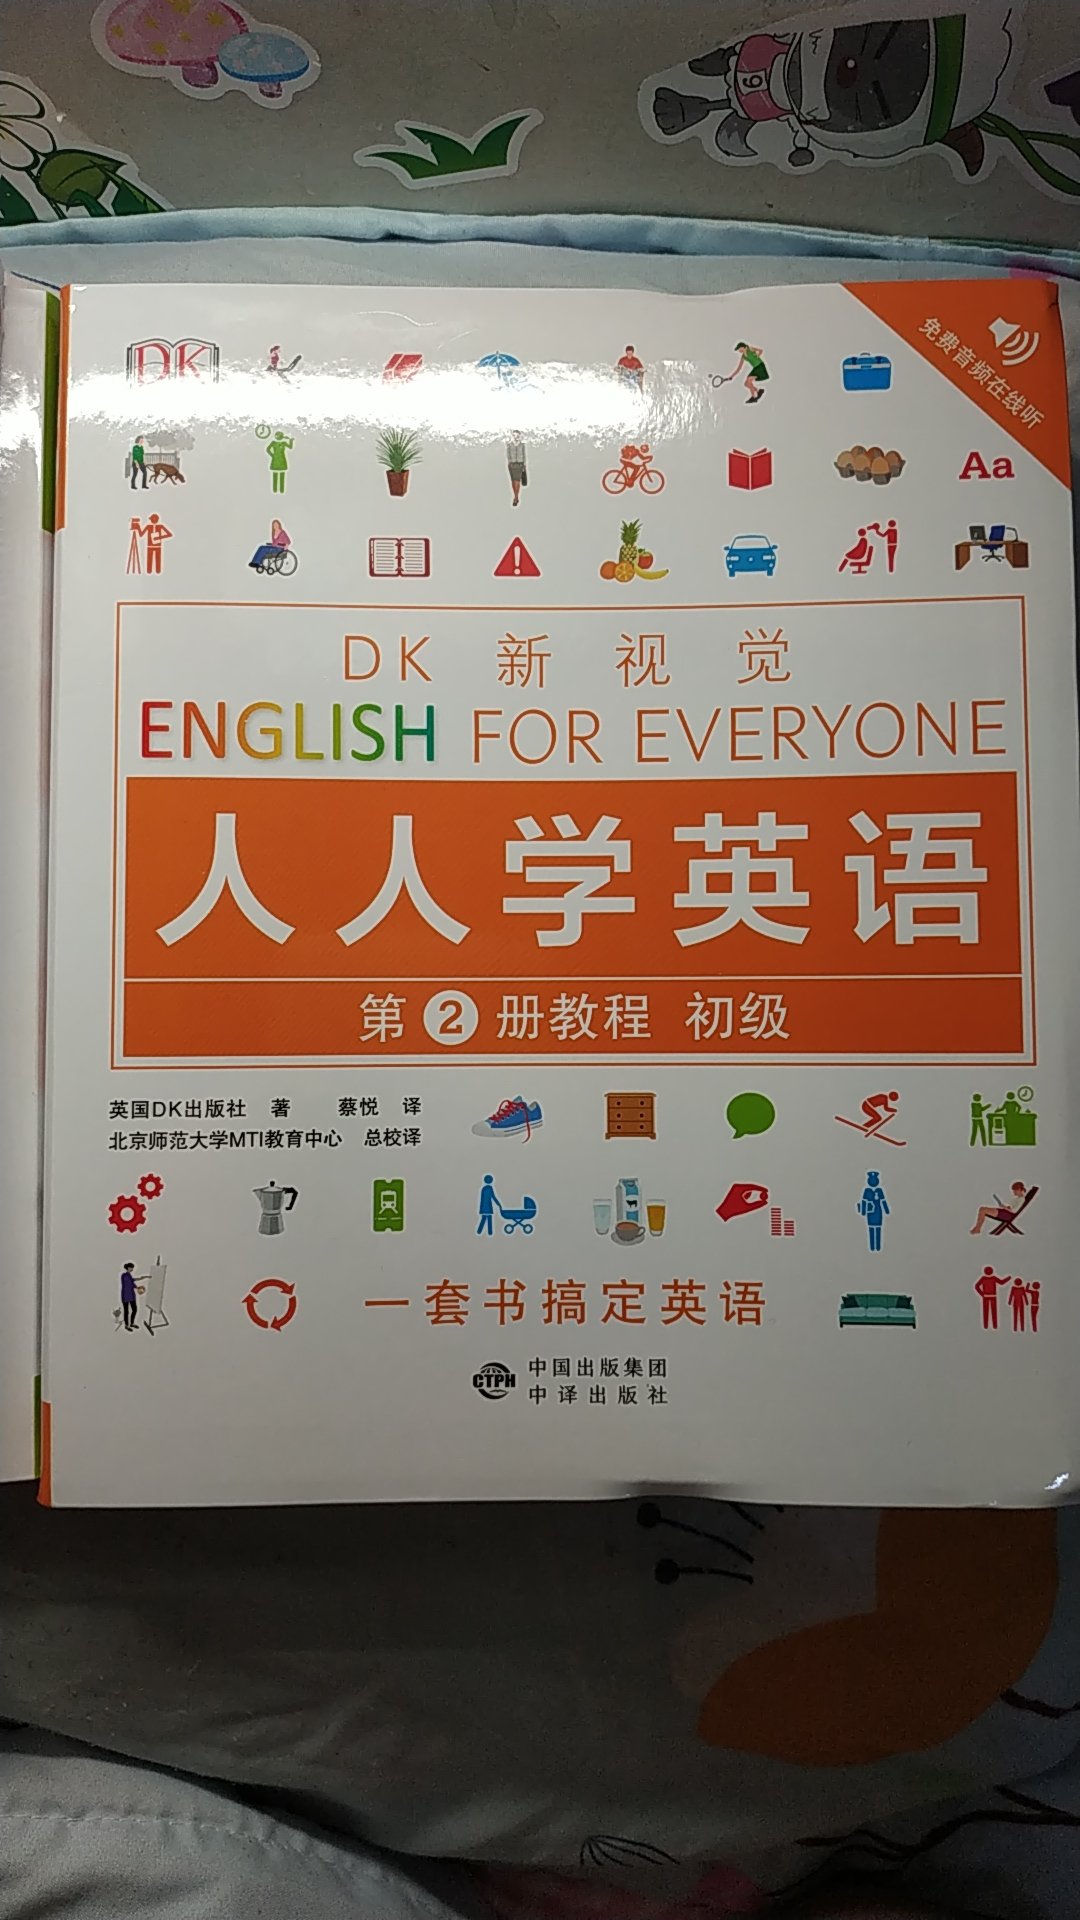 DK的这套书不错，简单到复杂，套装共4级别。这本是初级，简单明了，内容很多很丰富很厚，排版视觉效果不错，清晰明了。很喜欢，希望对孩子有用。